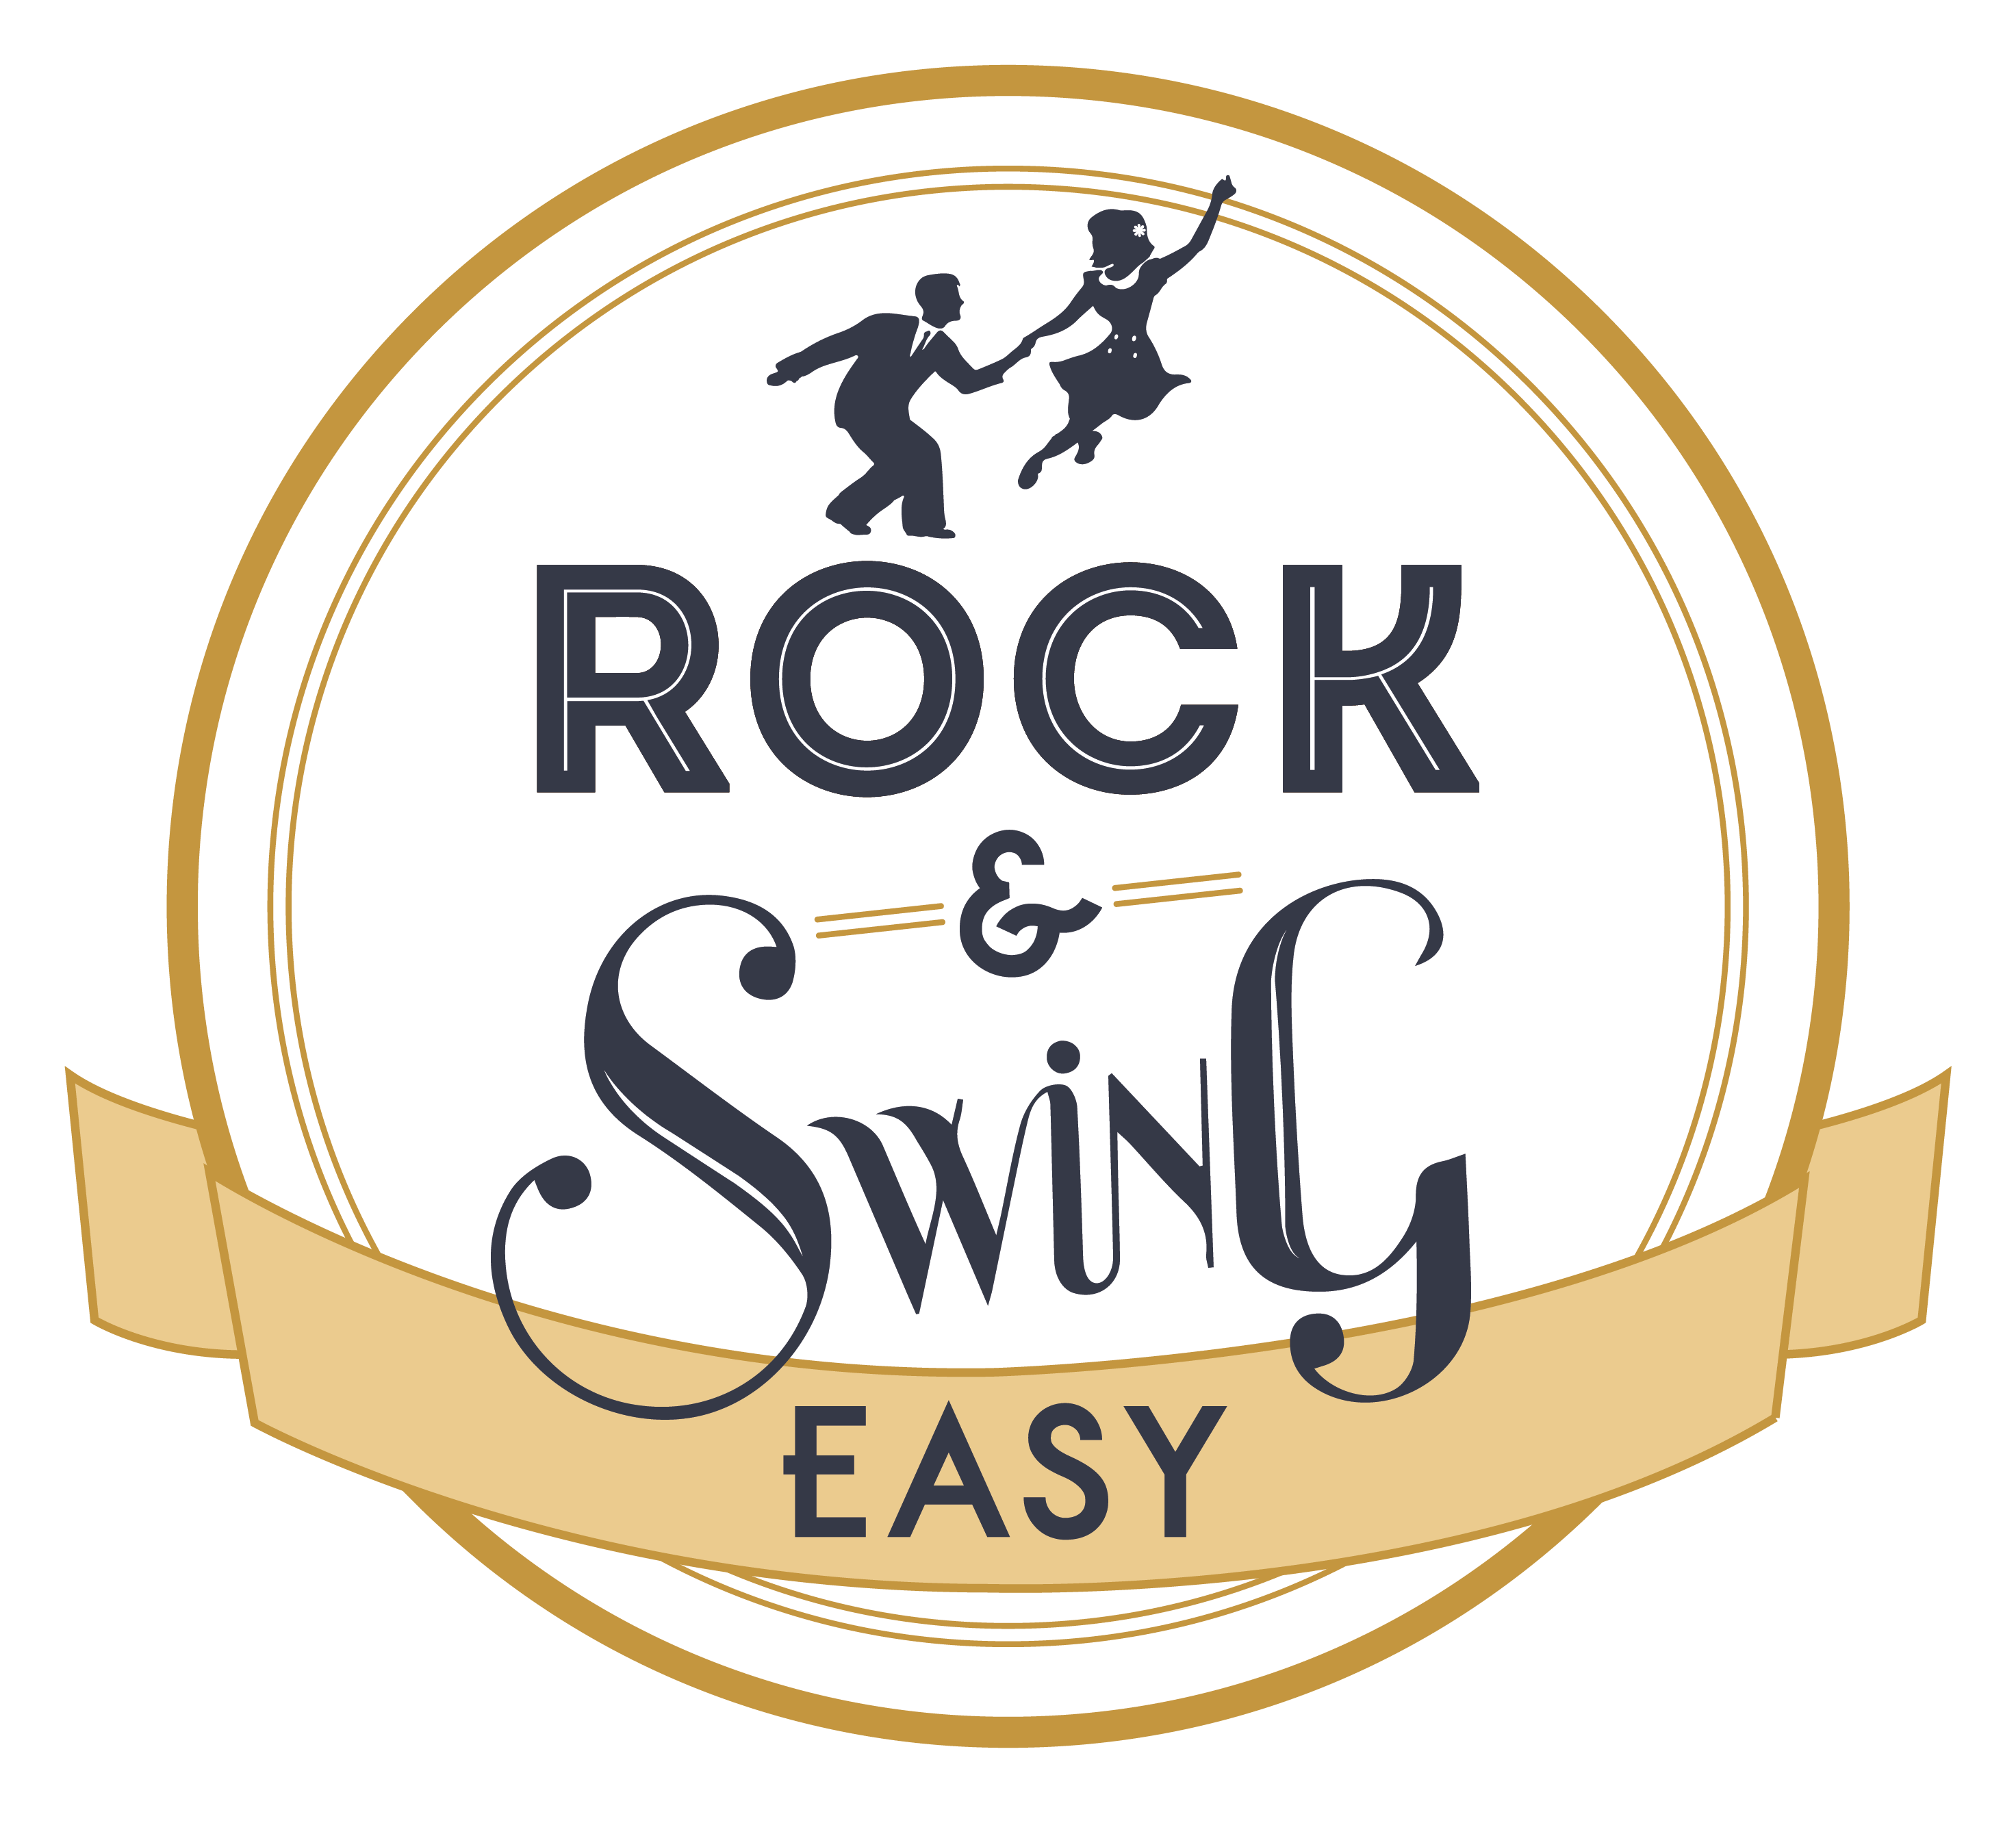 Rock & Swing Easy